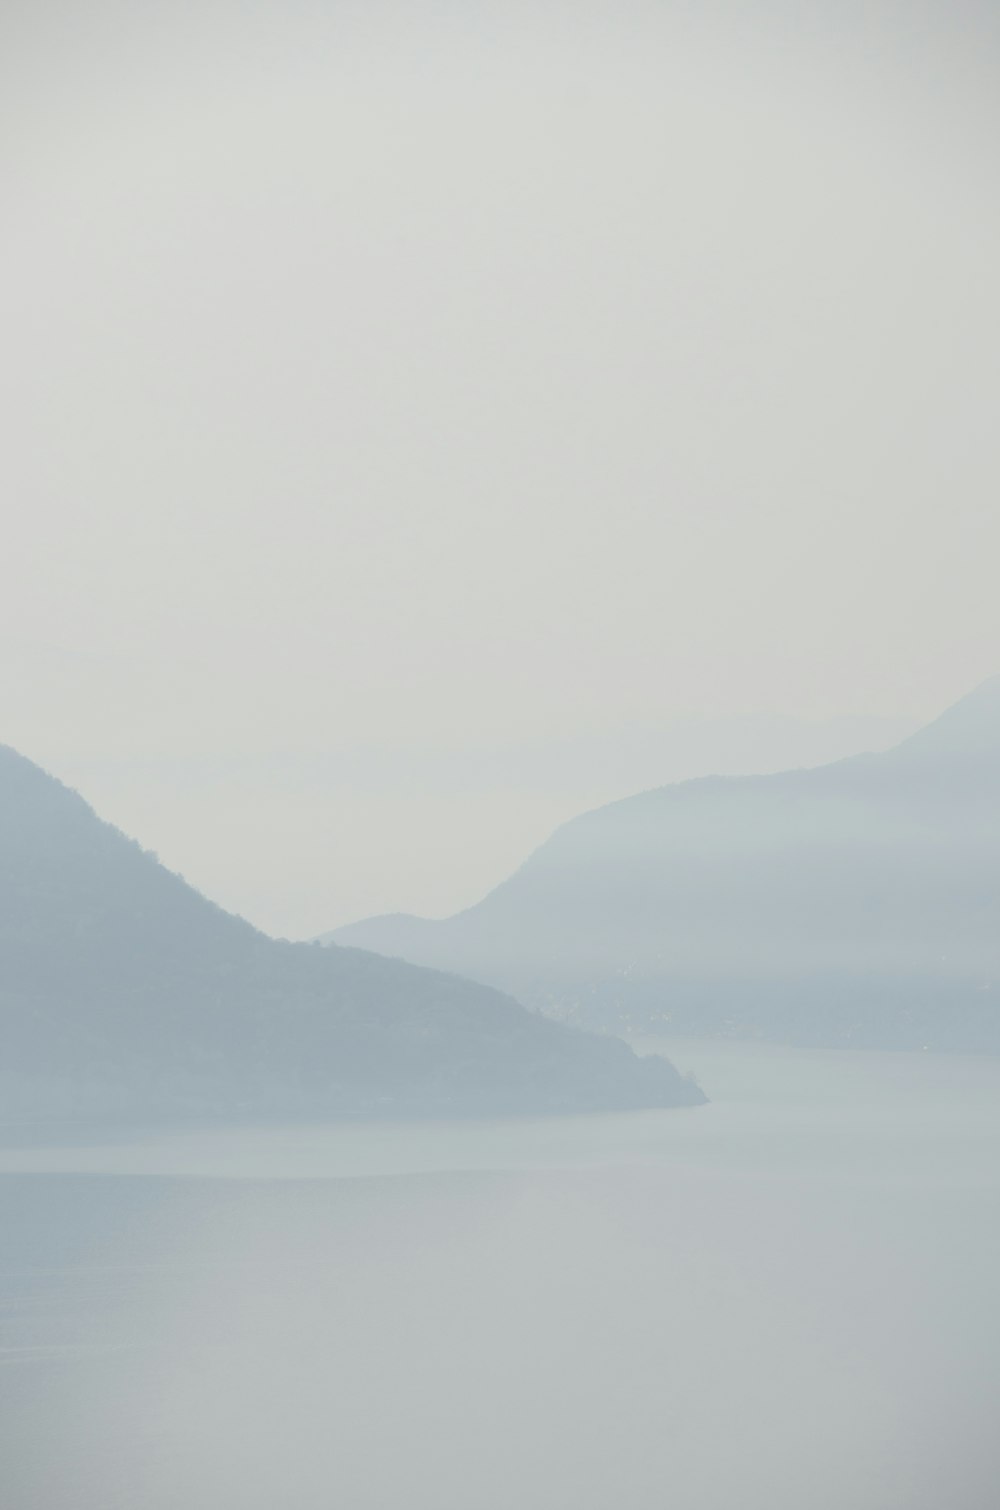 Un día de niebla sobre un lago con montañas en la distancia